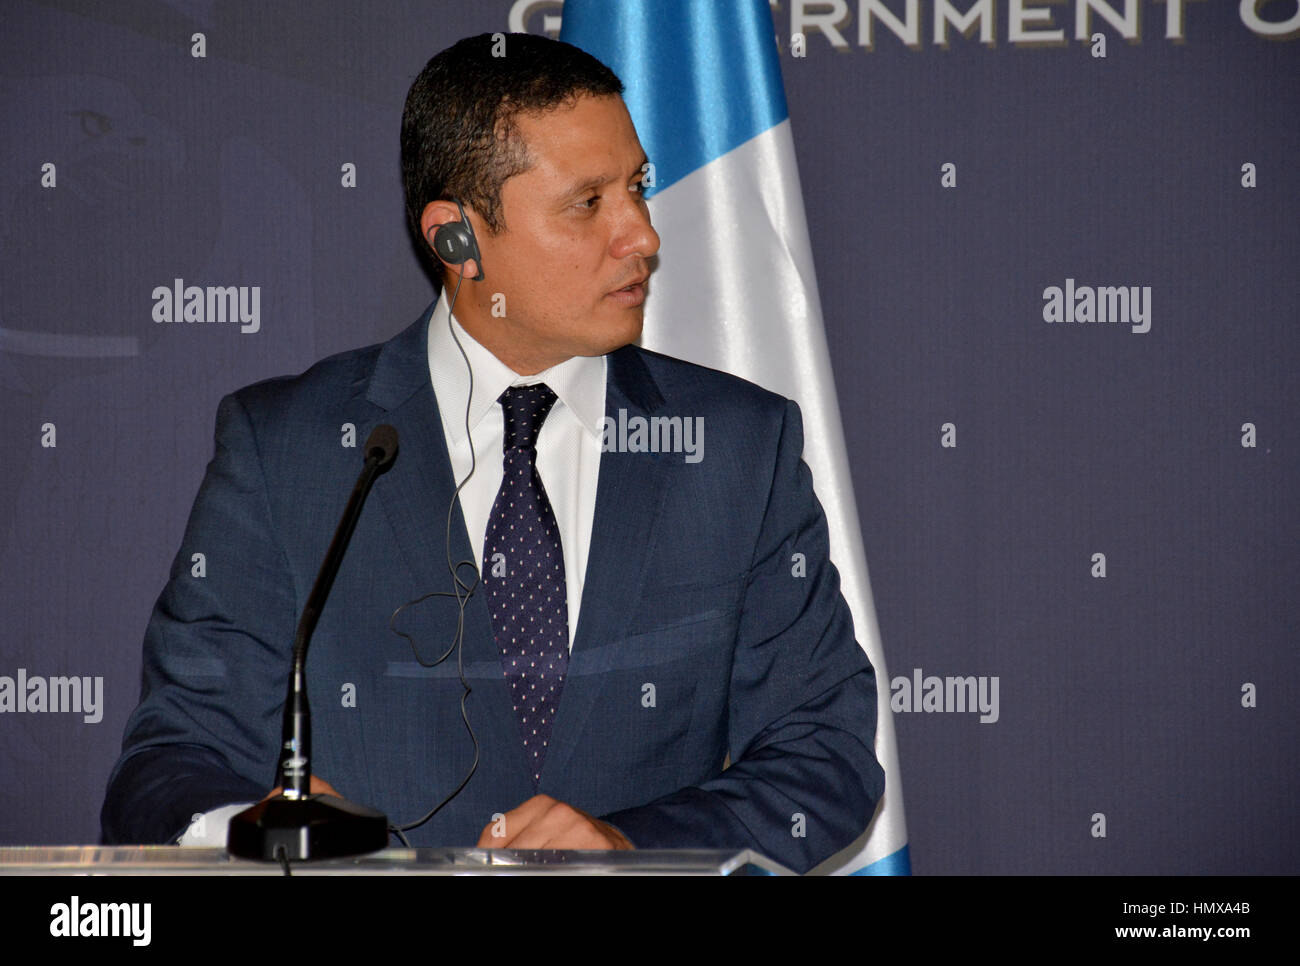 Belgrado, Serbia. El 10 de noviembre de 2016 - El Ministro de Relaciones Exteriores guatemalteco Carlos Raúl Morales en visita oficial a Serbia da un comunicado de prensa Foto de stock